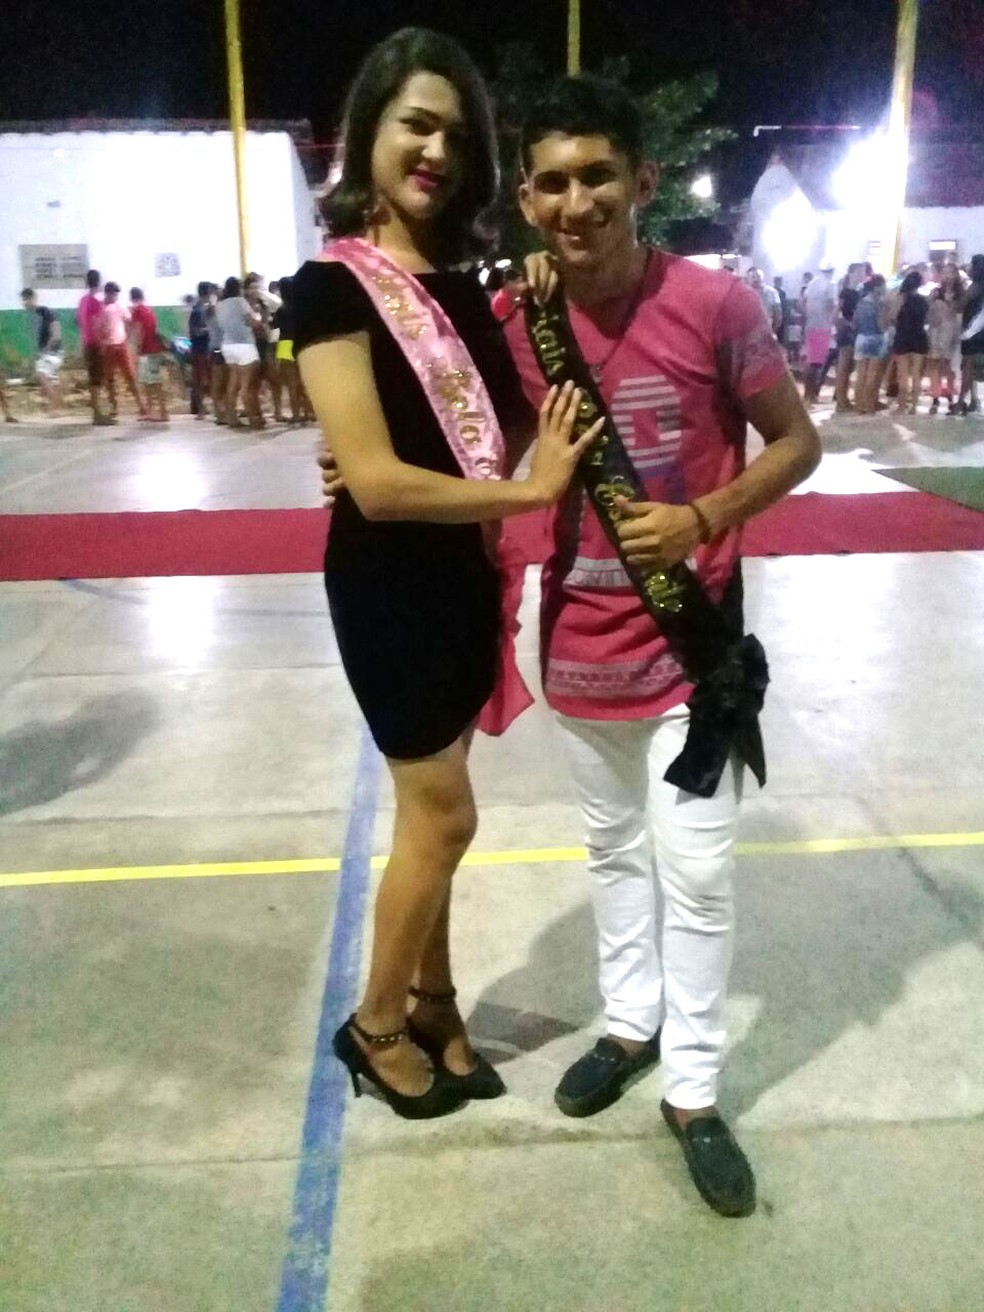 Concurso de beleza em escola é cancelado após drag ser eleita a mulher mais bela (Foto: Divulgação/Arquivo Pessoal)